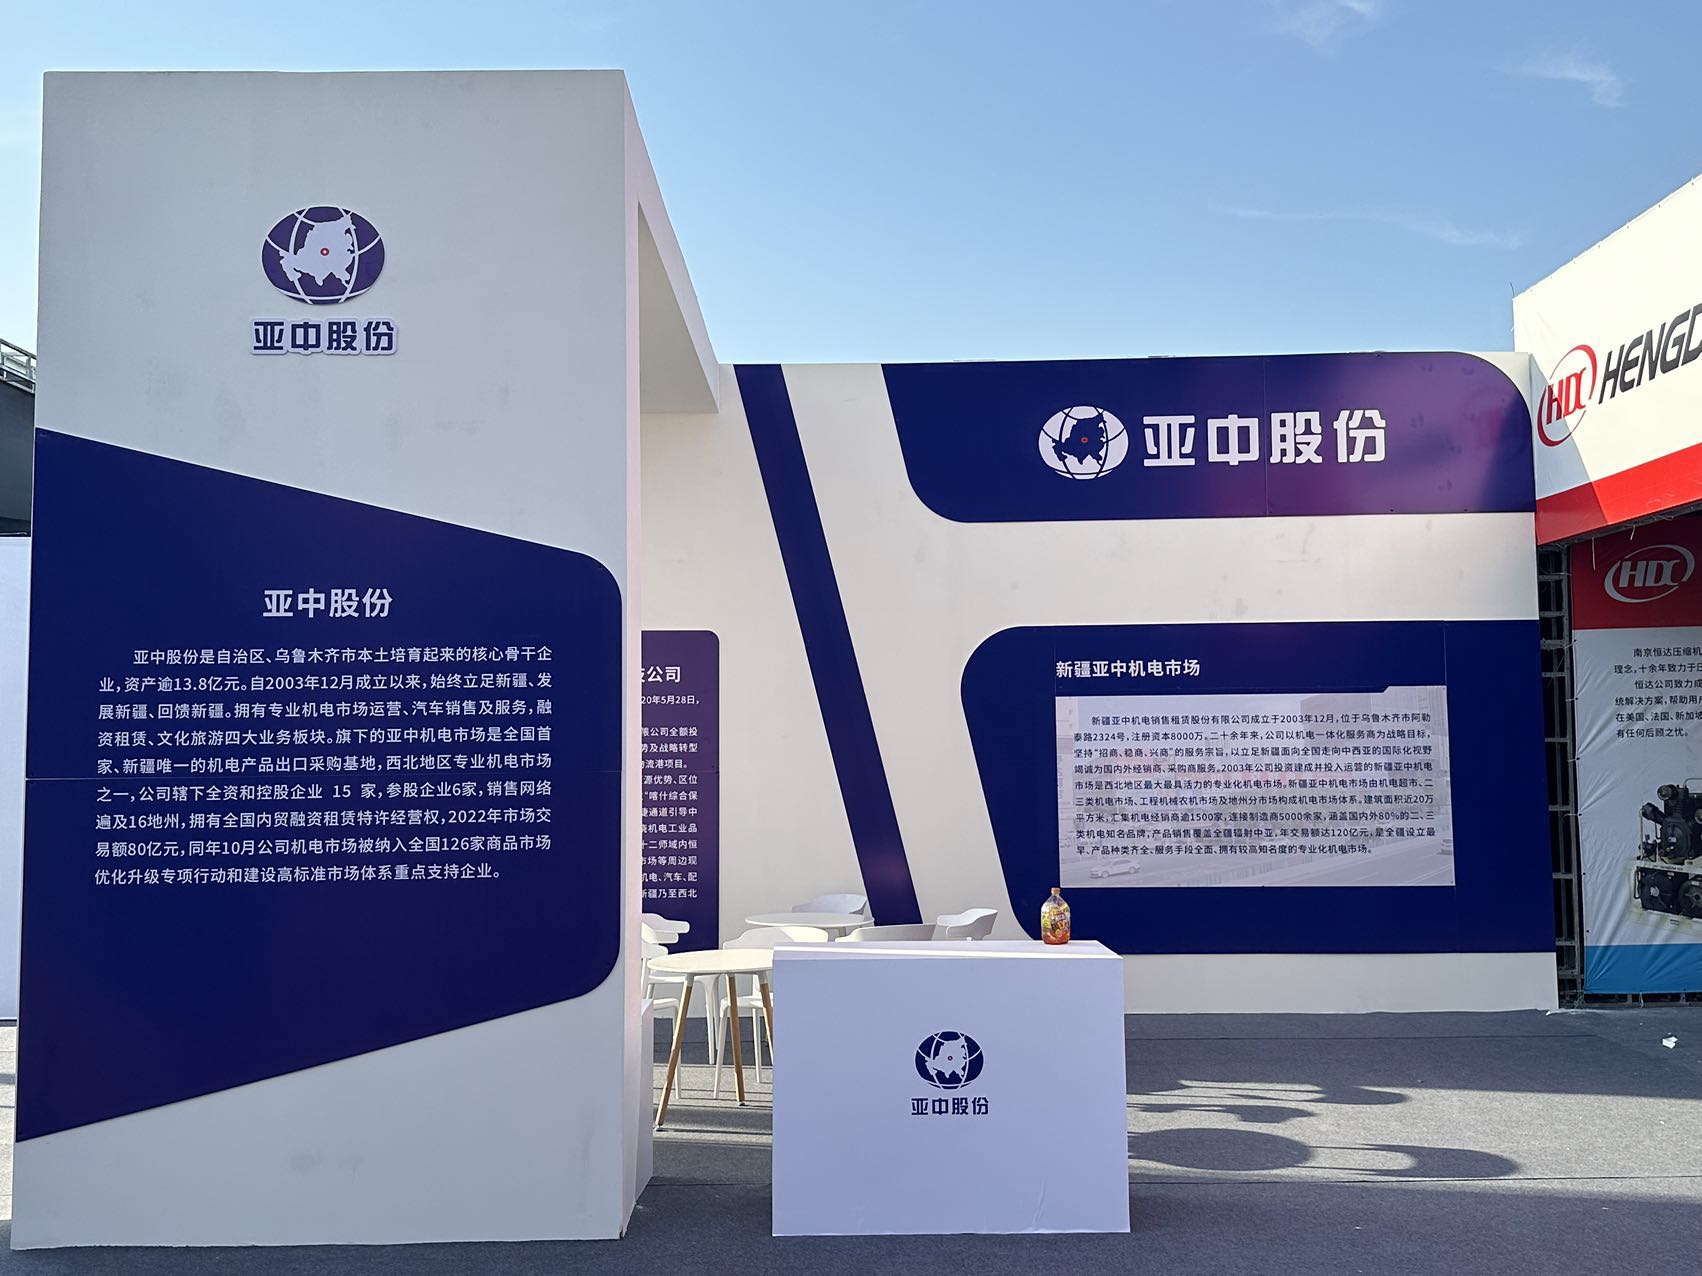 亚中机电亮相第八届中国—亚欧博览会